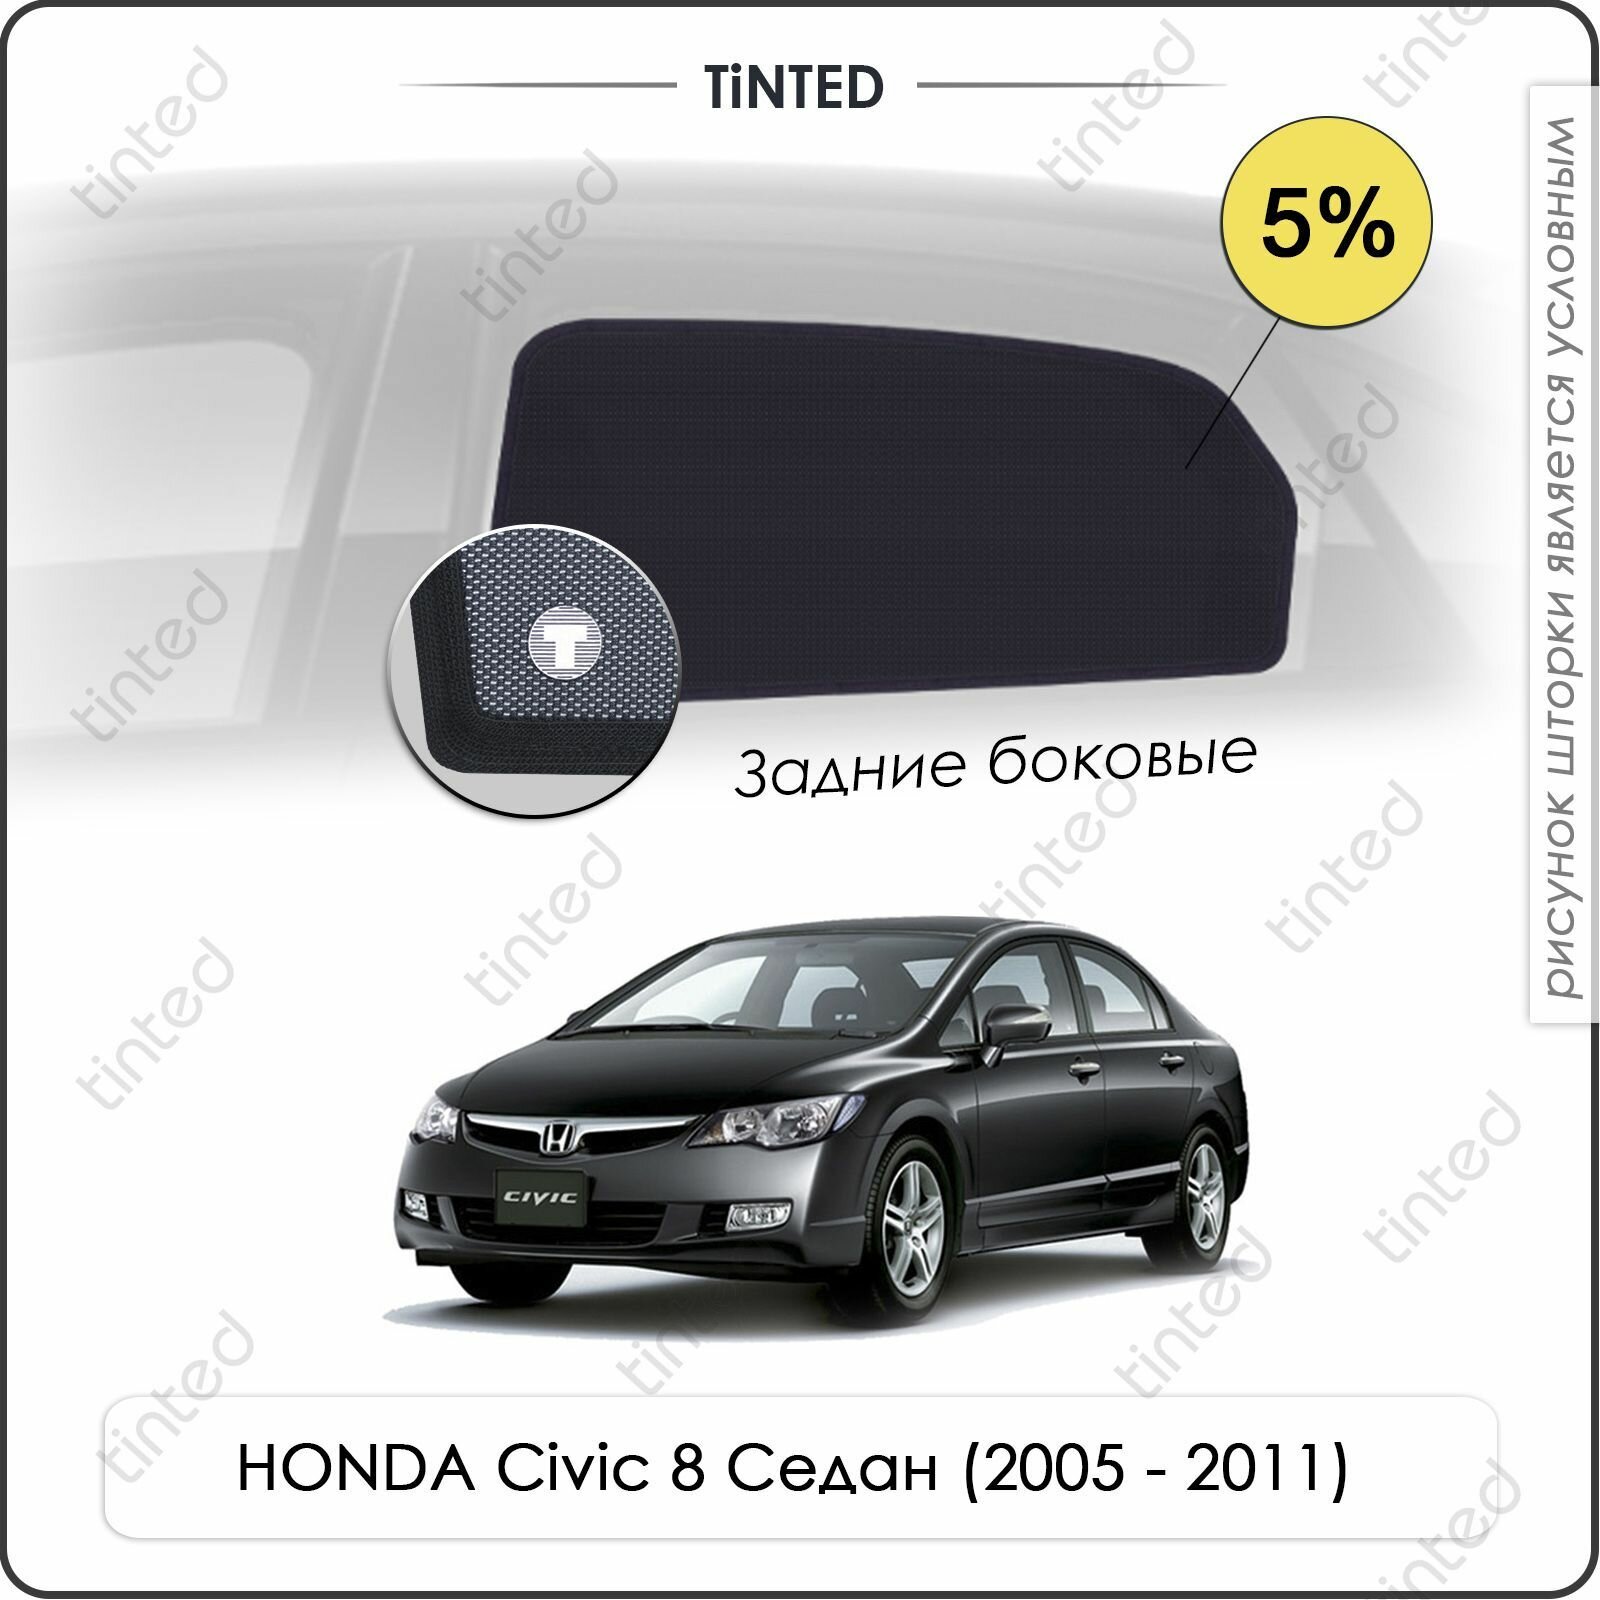 Шторки на автомобиль солнцезащитные HONDA Civic 8 Седан 4дв. (2005 - 2011) на задние двери 5% сетки от солнца в машину хонда цивик Каркасные автошторки Premium